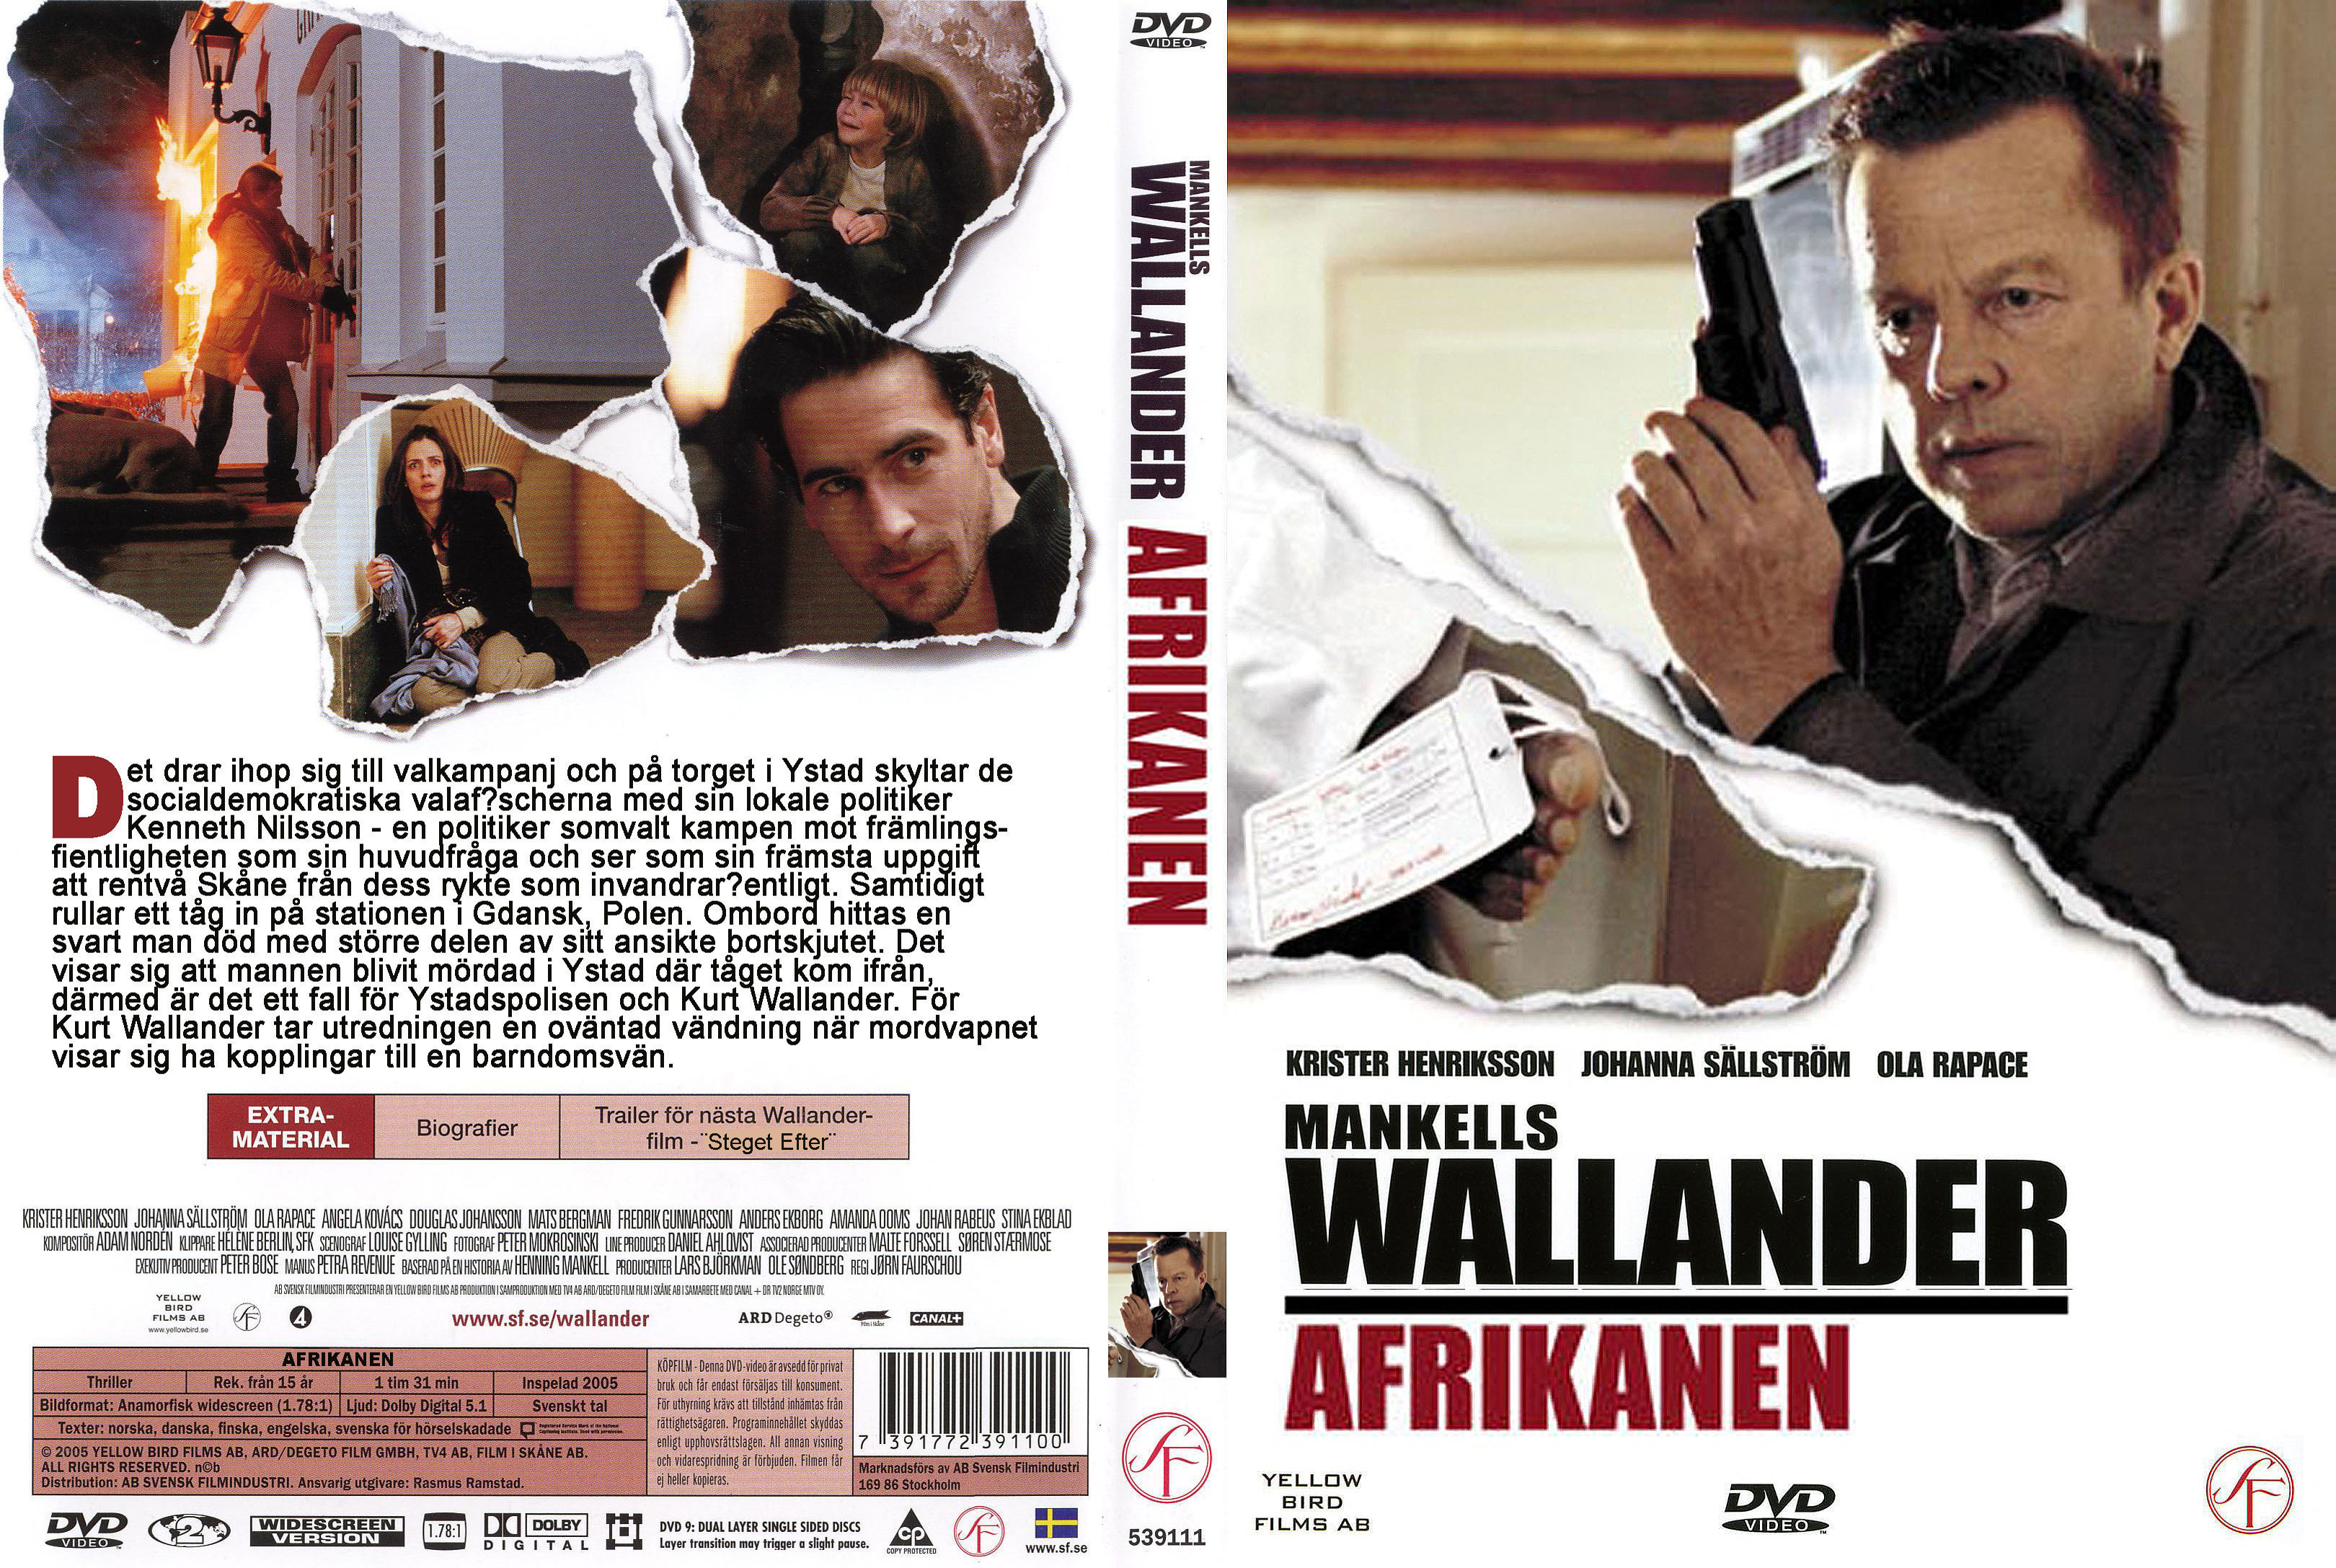 05 Afrikanen (De Afrikaan) Wallander (Krister Henrikson) DvD 5 van 32